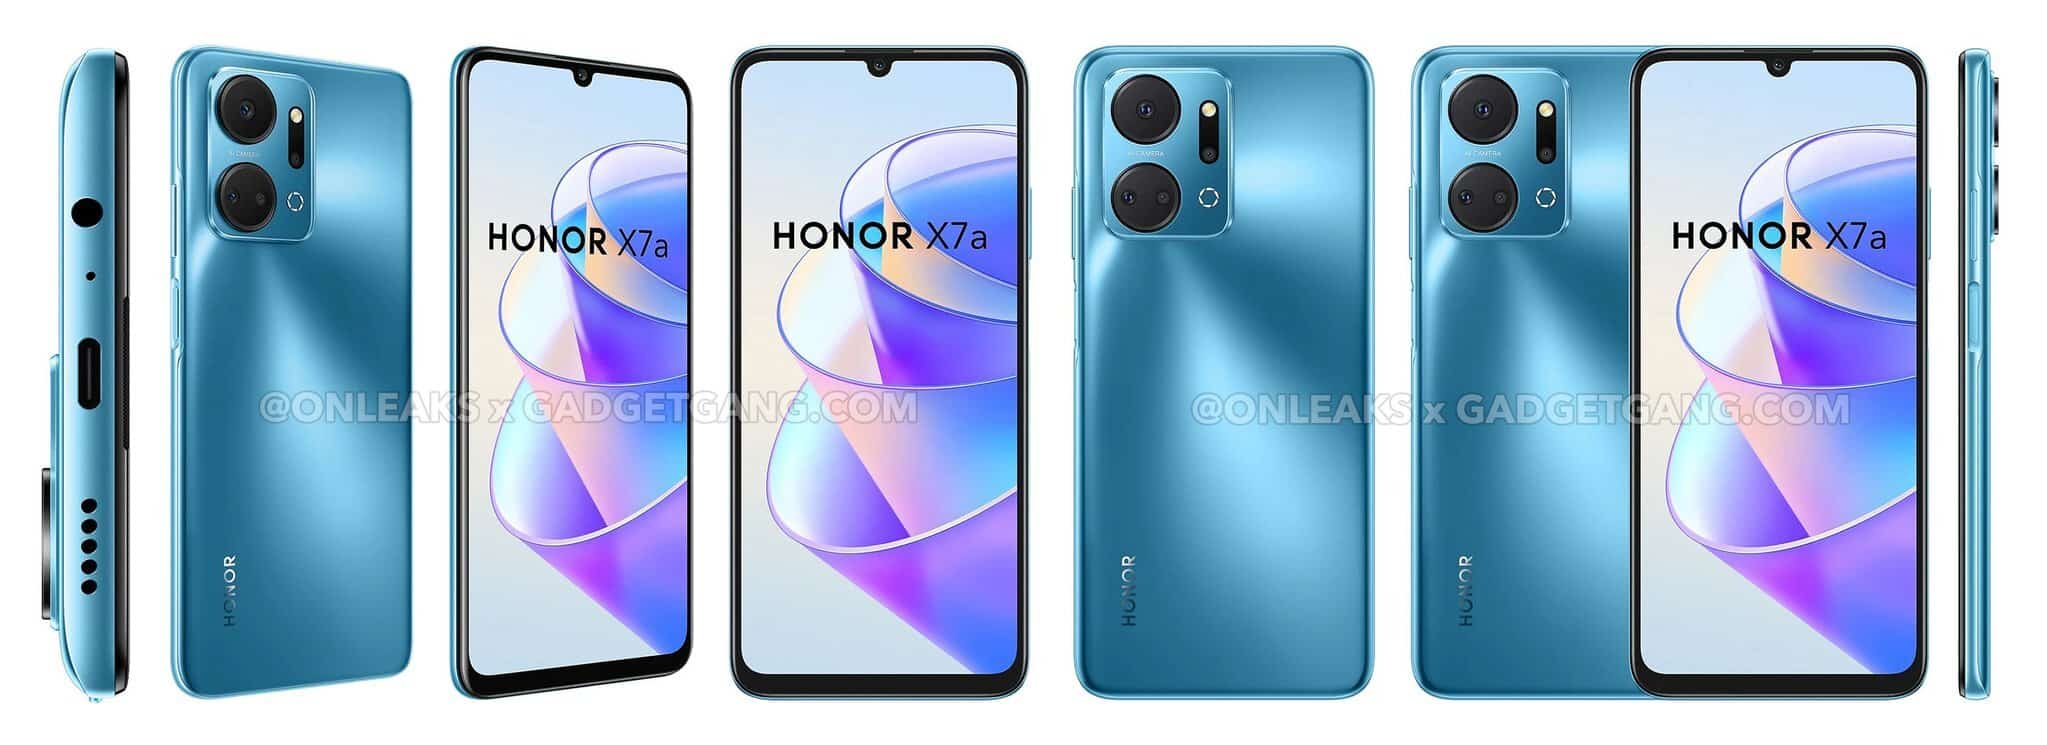 Rò rỉ hình ảnh về chiếc điện thoại giá rẻ Honor X7a | Hoàng Hà Mobile